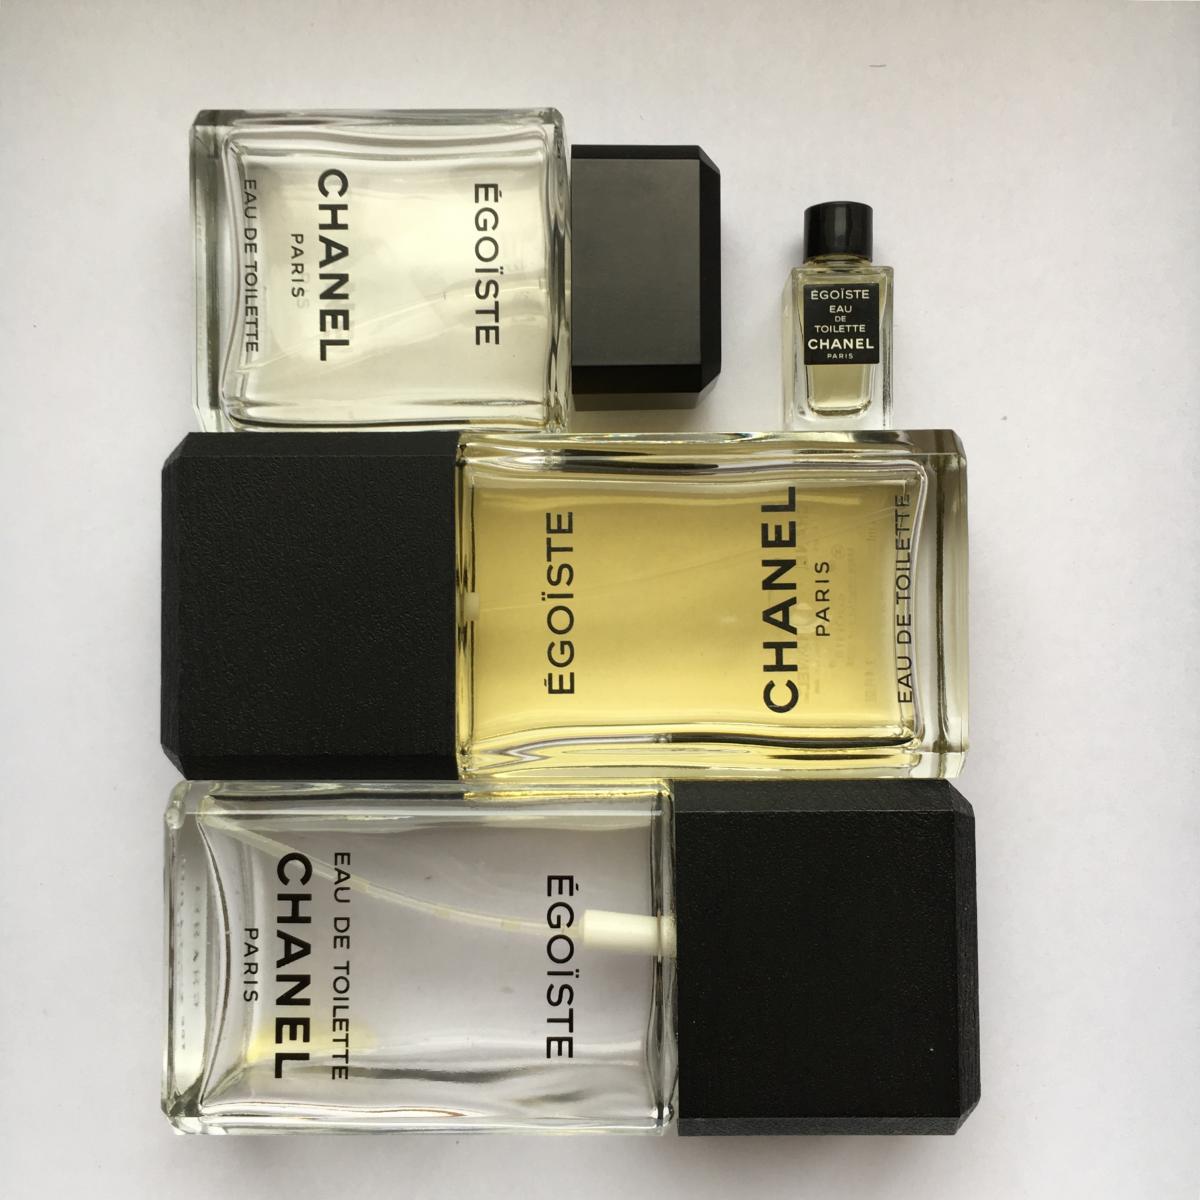 Egoiste Chanel - una fragranza da uomo 1990